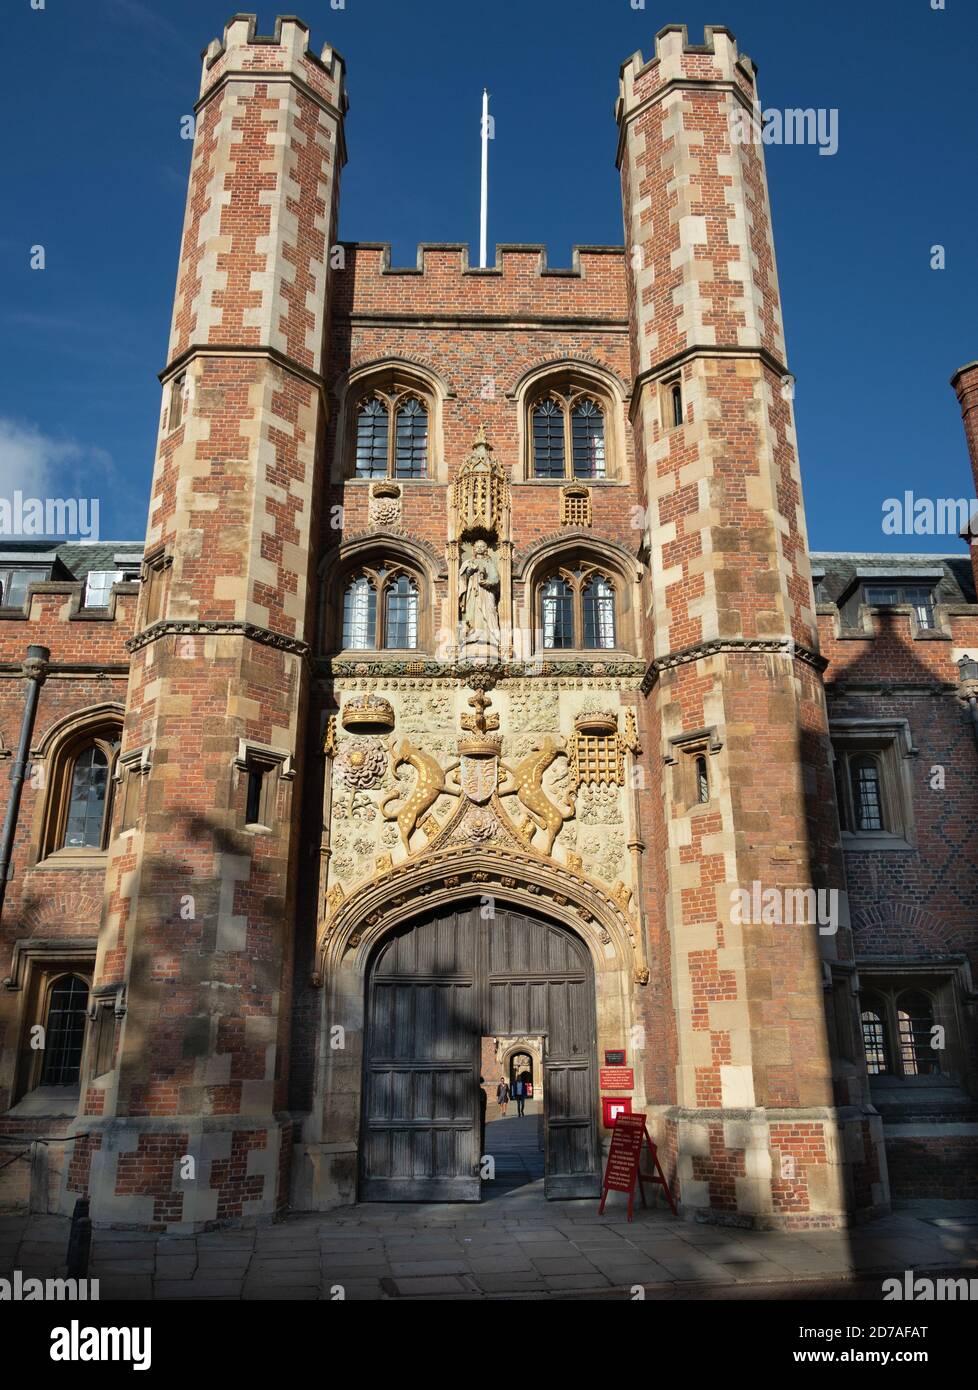 Das große Tor von St. Johns College Cambridge mit Schnitzerei Wappen der Gründerin, Lady Margaret Beaufort. Und Statue von St. John der Evangelist Stockfoto